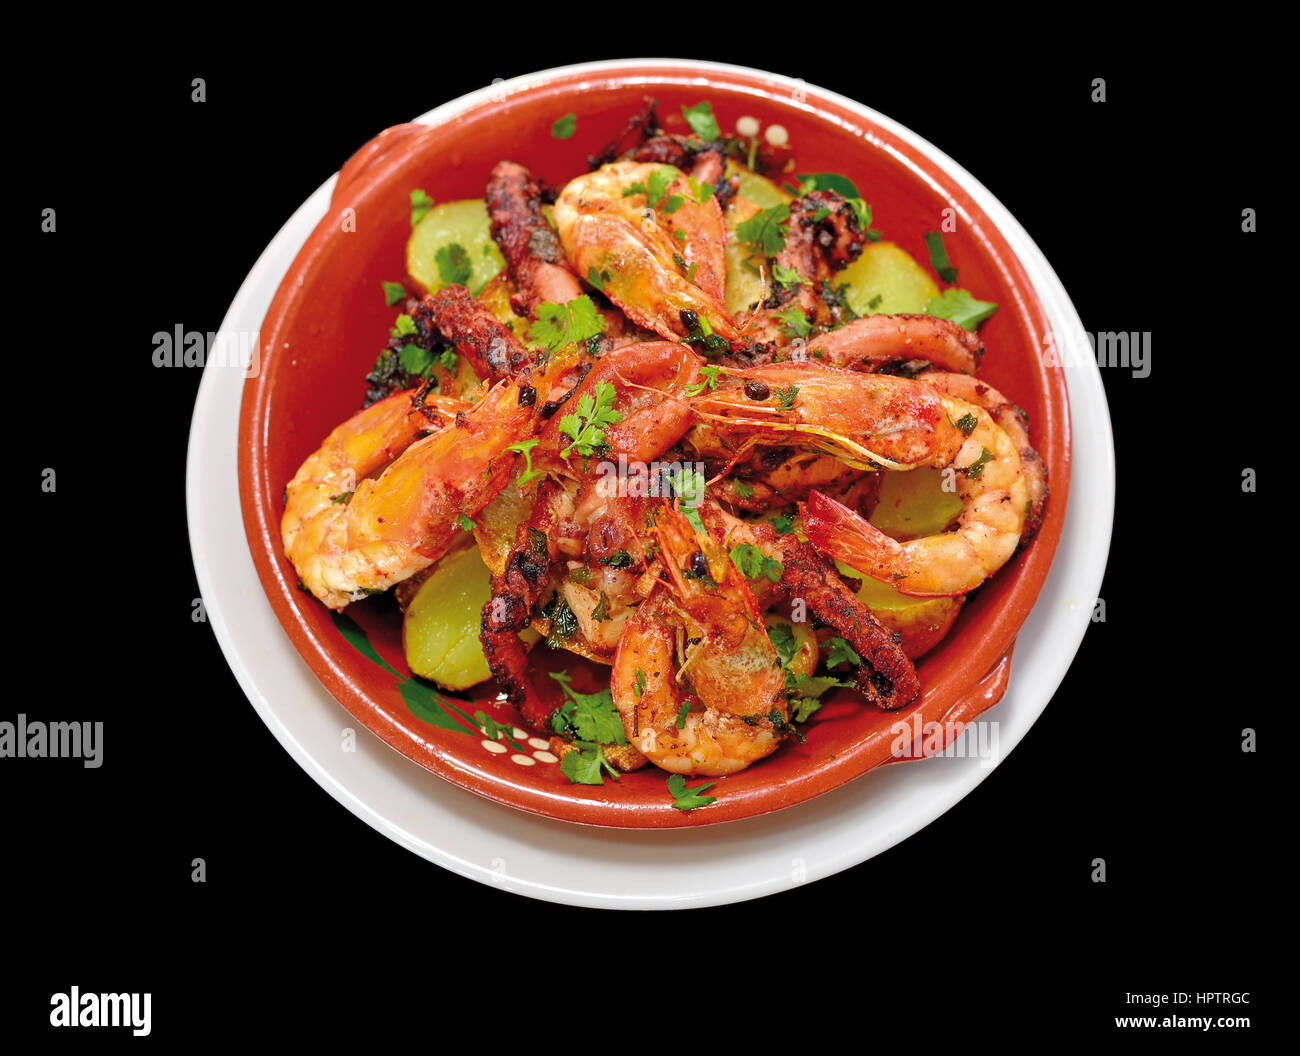 Nahaufnahme von einem Oktopus und Garnelen Gericht in einer Teracotta-Platte mit schwarzem Hintergrund Stockfoto